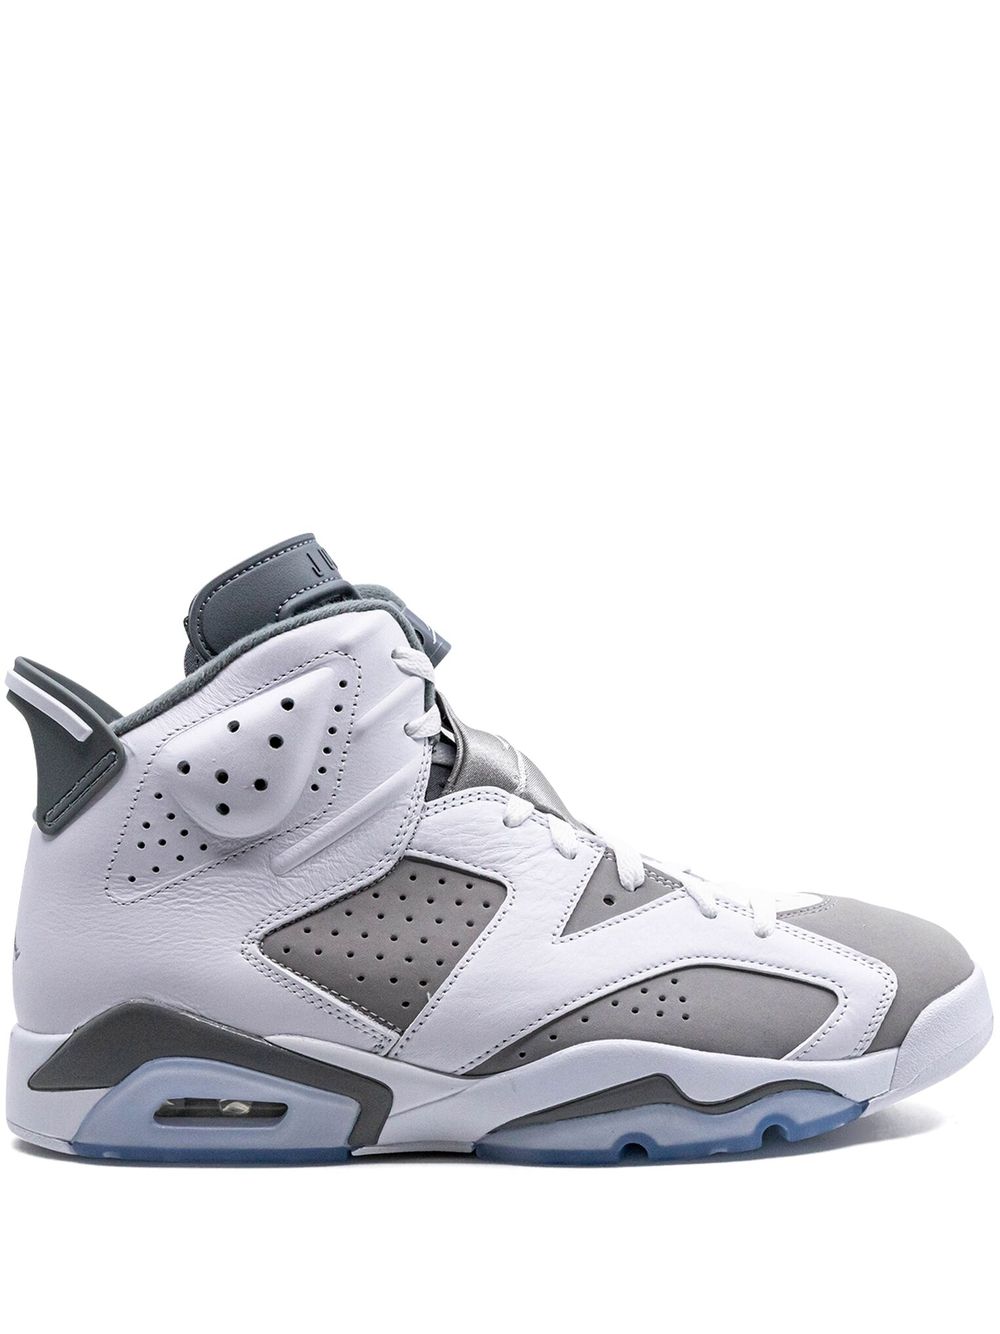 Jordan Air Jordan 6 "Cool Grey" sneakers - White